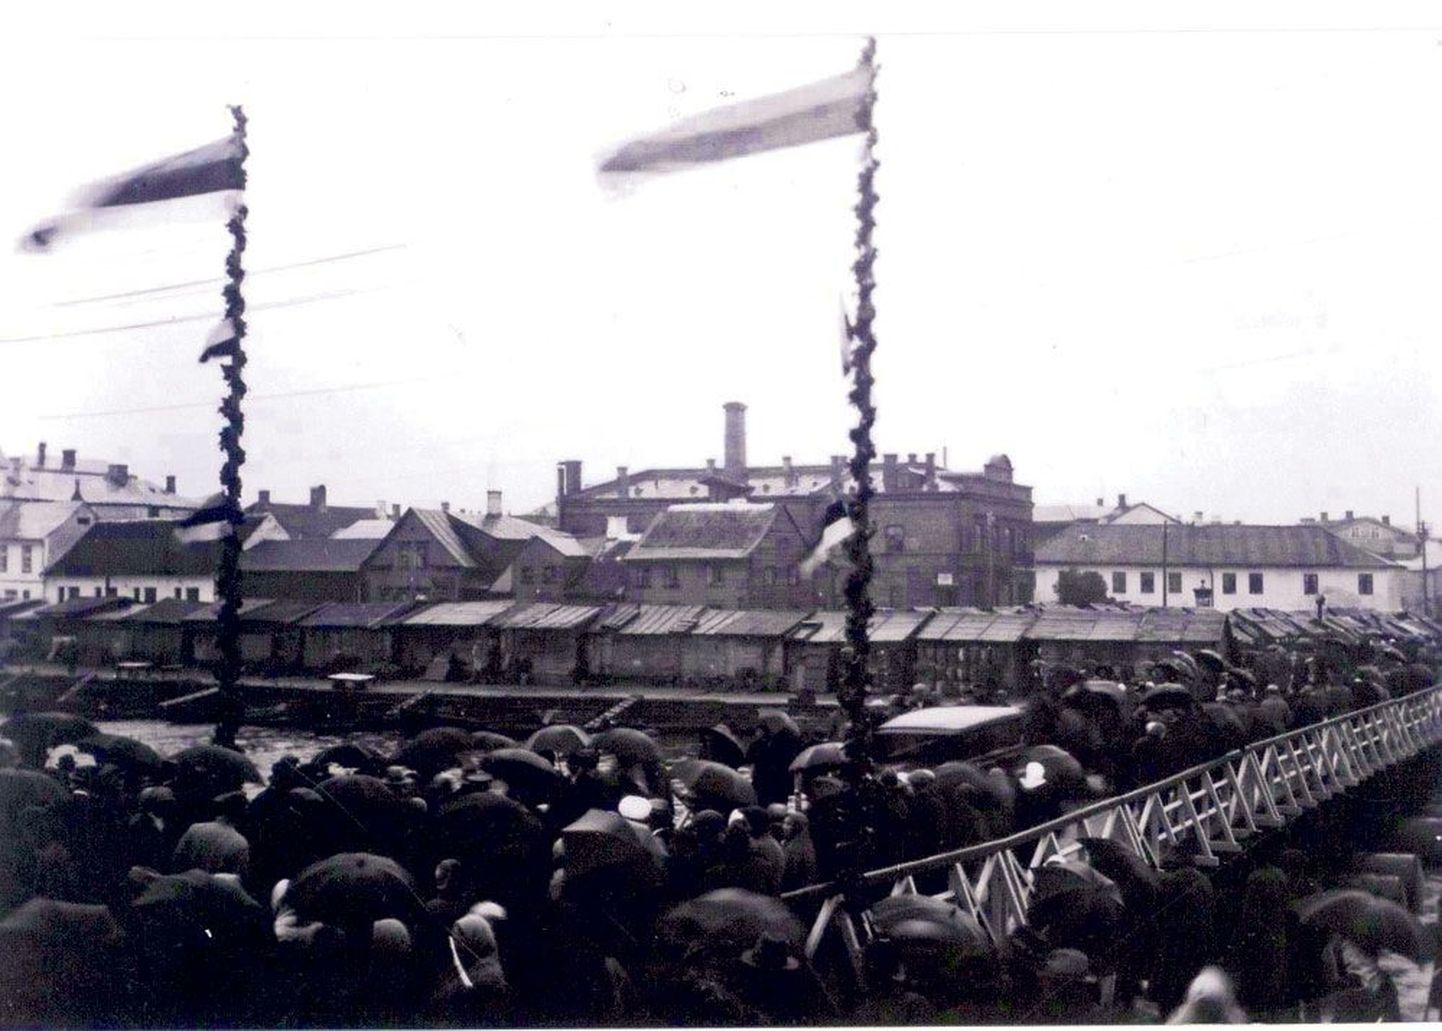 24. august 1933. Uue suure kandejõuga pontoonsilla ehk Ujuksilla avamine Emajõel Lodja (Riia) tänava ja Narva maantee liikluse ühendamiseks. Pidulikuks hetkeks on silla otsa juurde püstitatud kaks pikka masti dekoreeritud spiraalikujuliselt paigutatud pärjaga. Mastide tipul ning keskel lehvivad rahvuslipud ja valge-punane Tartu linna lipp.